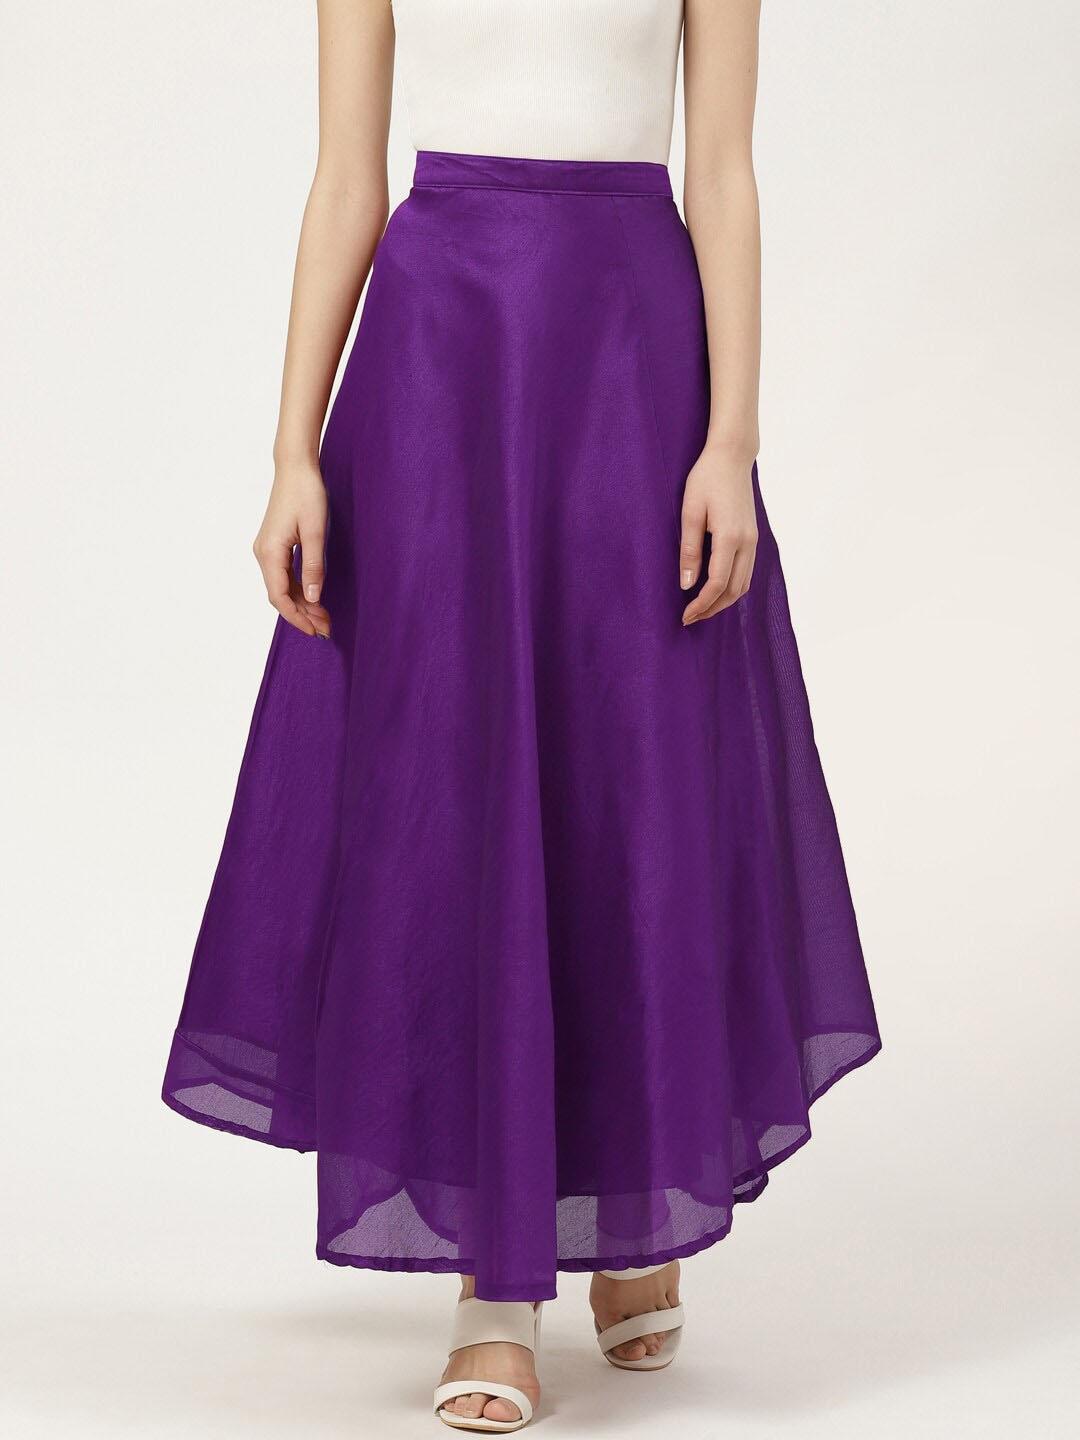 Vastraa Fusion Women Purple Solid Flared Maxi Skirt